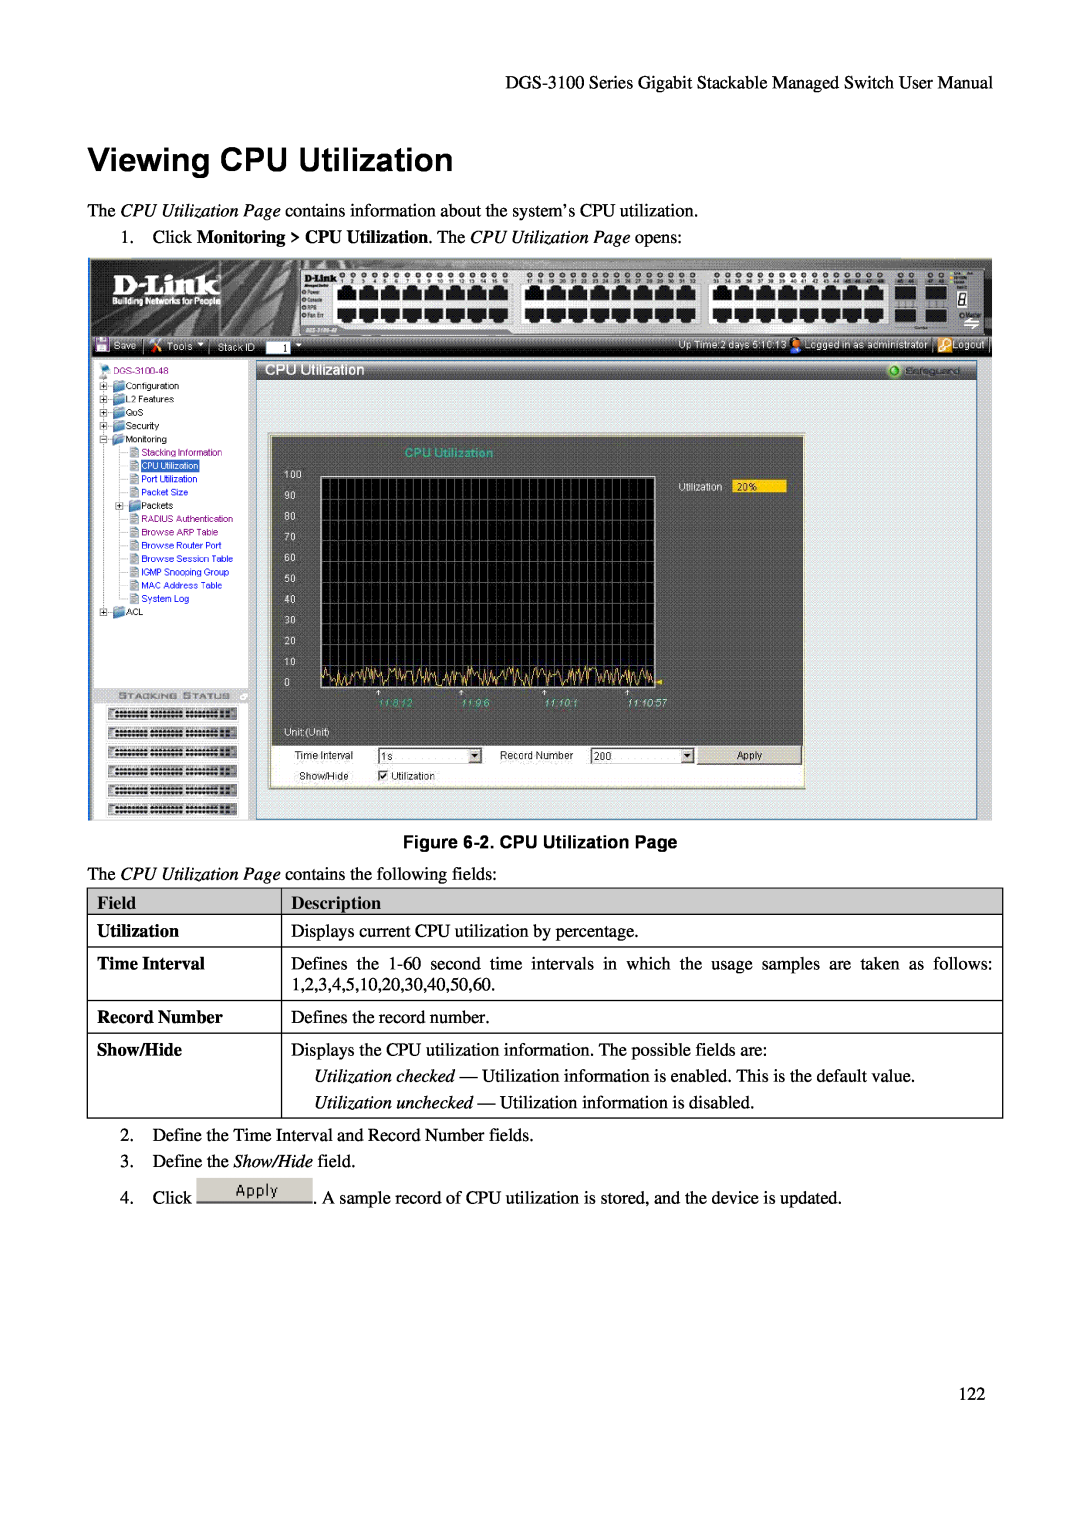 D-Link DGS-3100 Viewing CPU Utilization, Click Monitoring CPU Utilization. The CPU Utilization Page opens, Description 